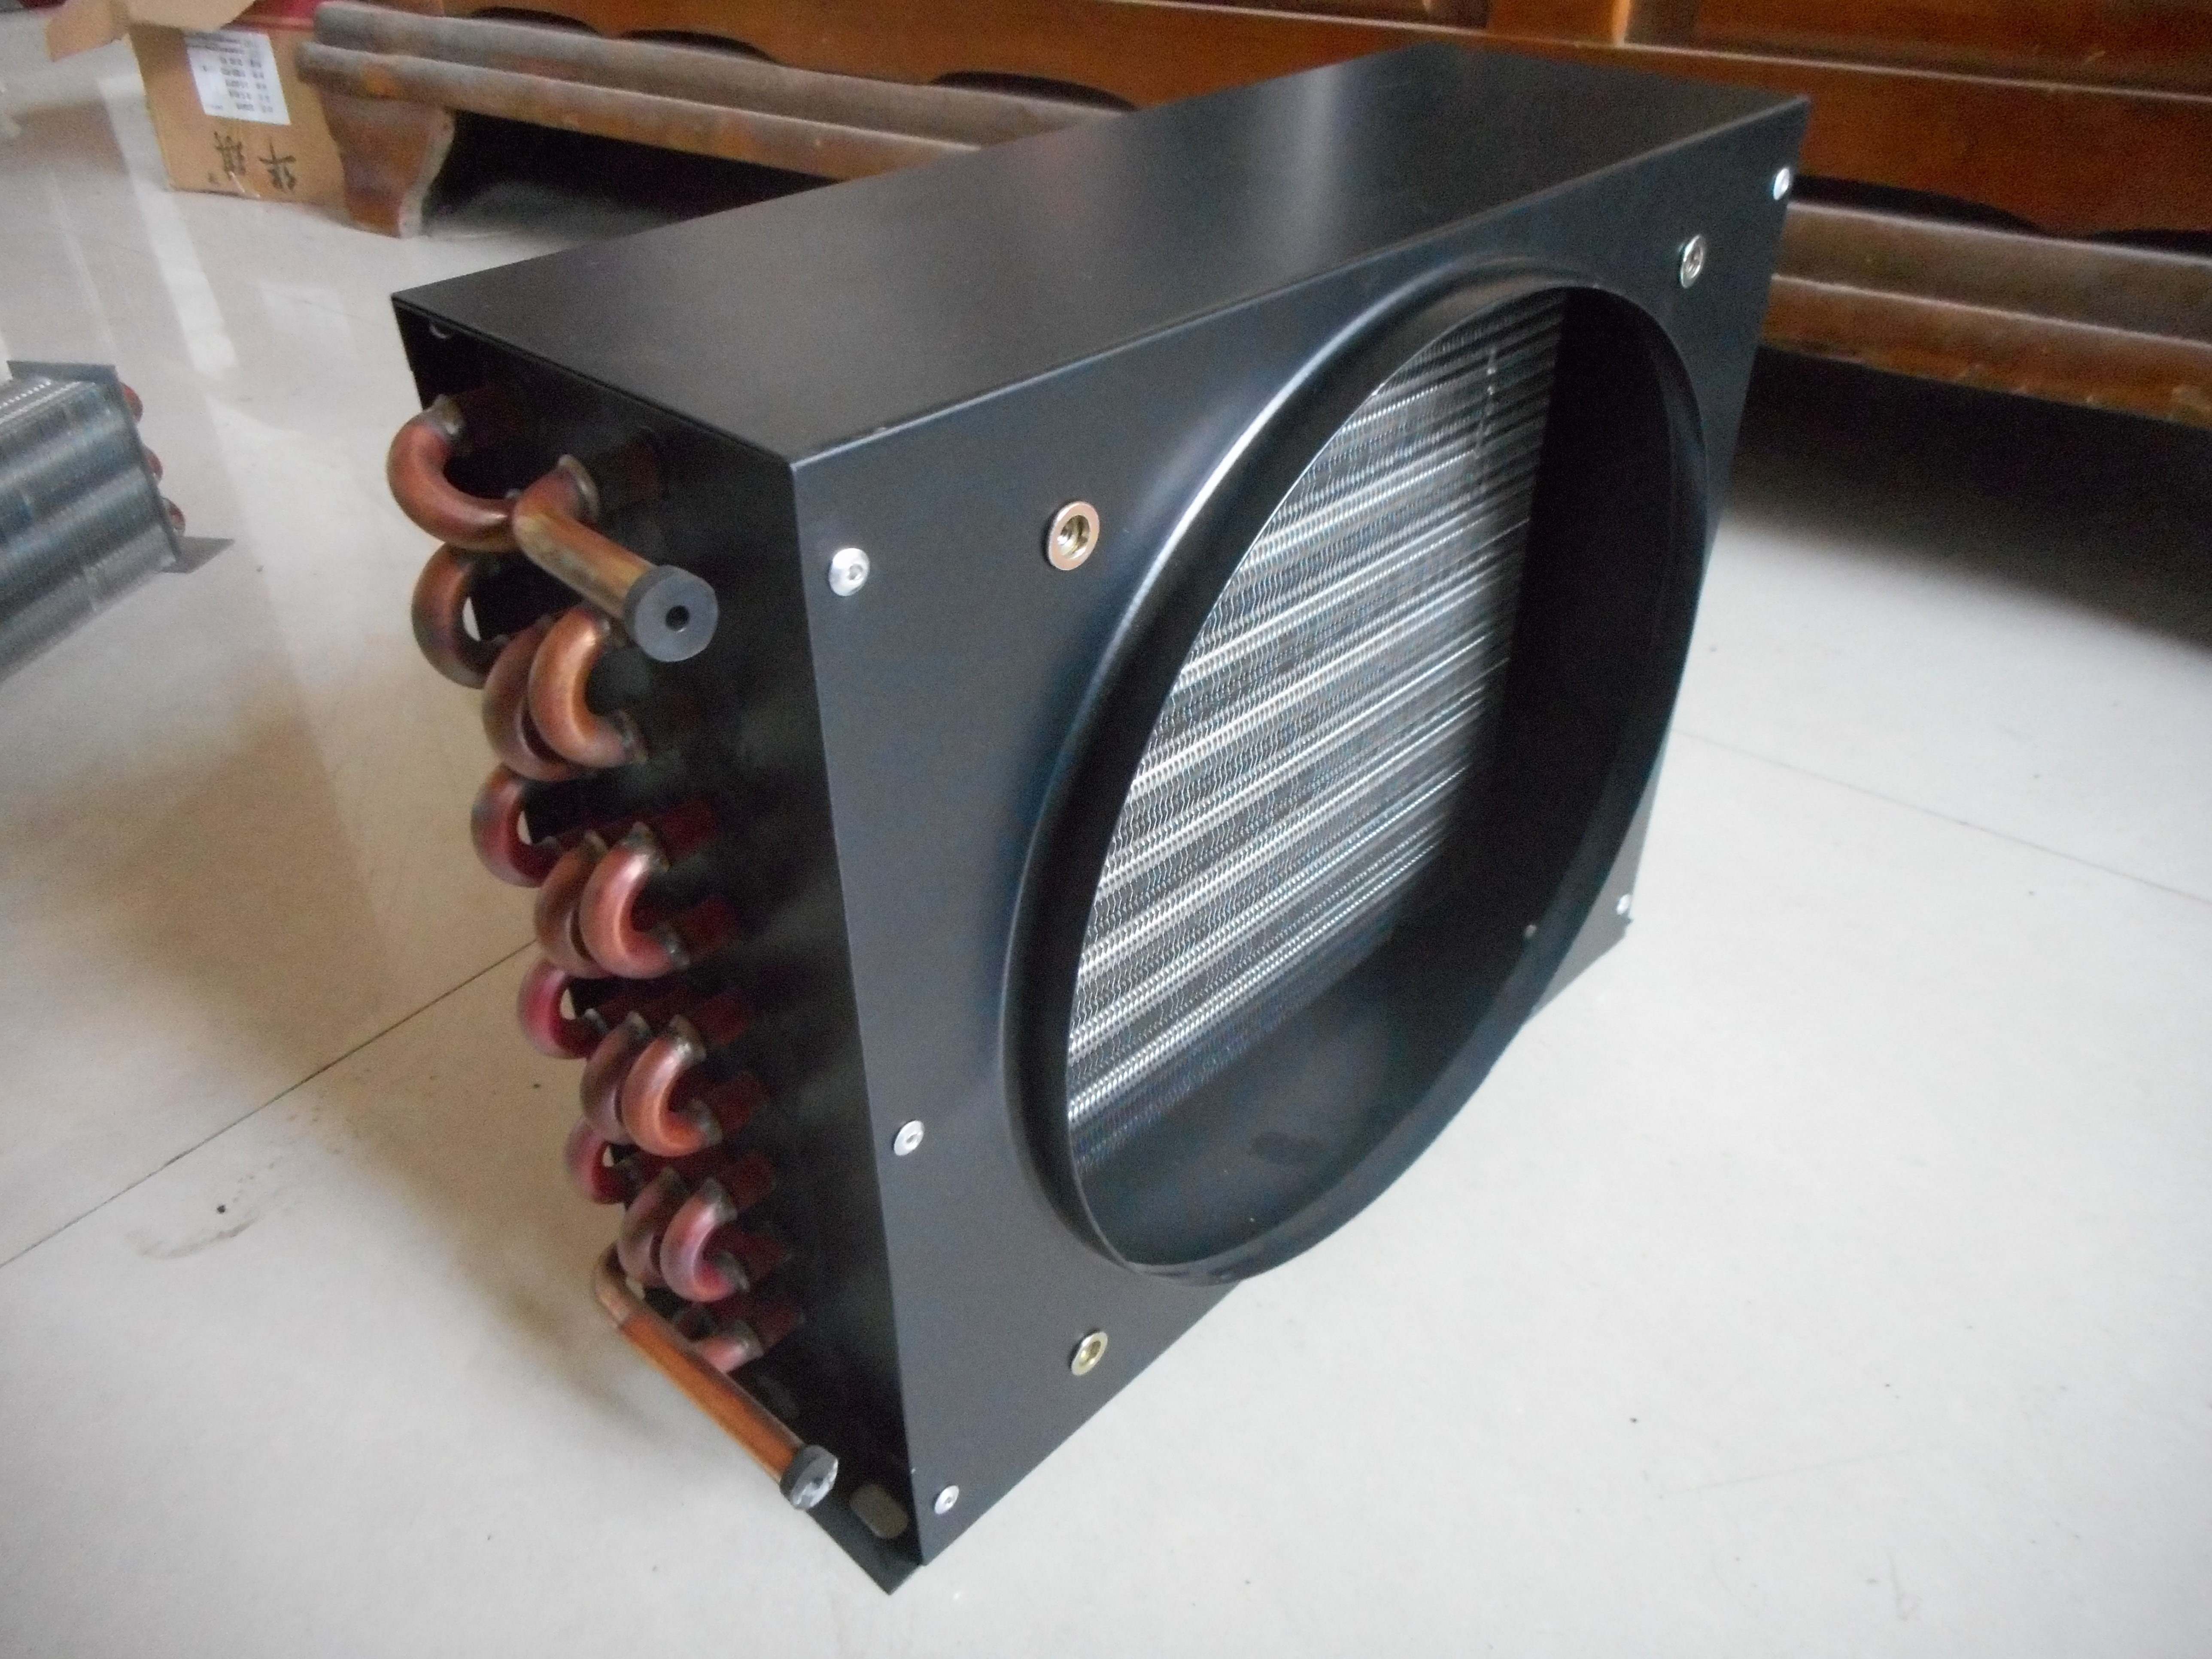 Condensateurs de tubes en cuivre à ailettes en aluminium de réfrigération pour refroidisseur d'air